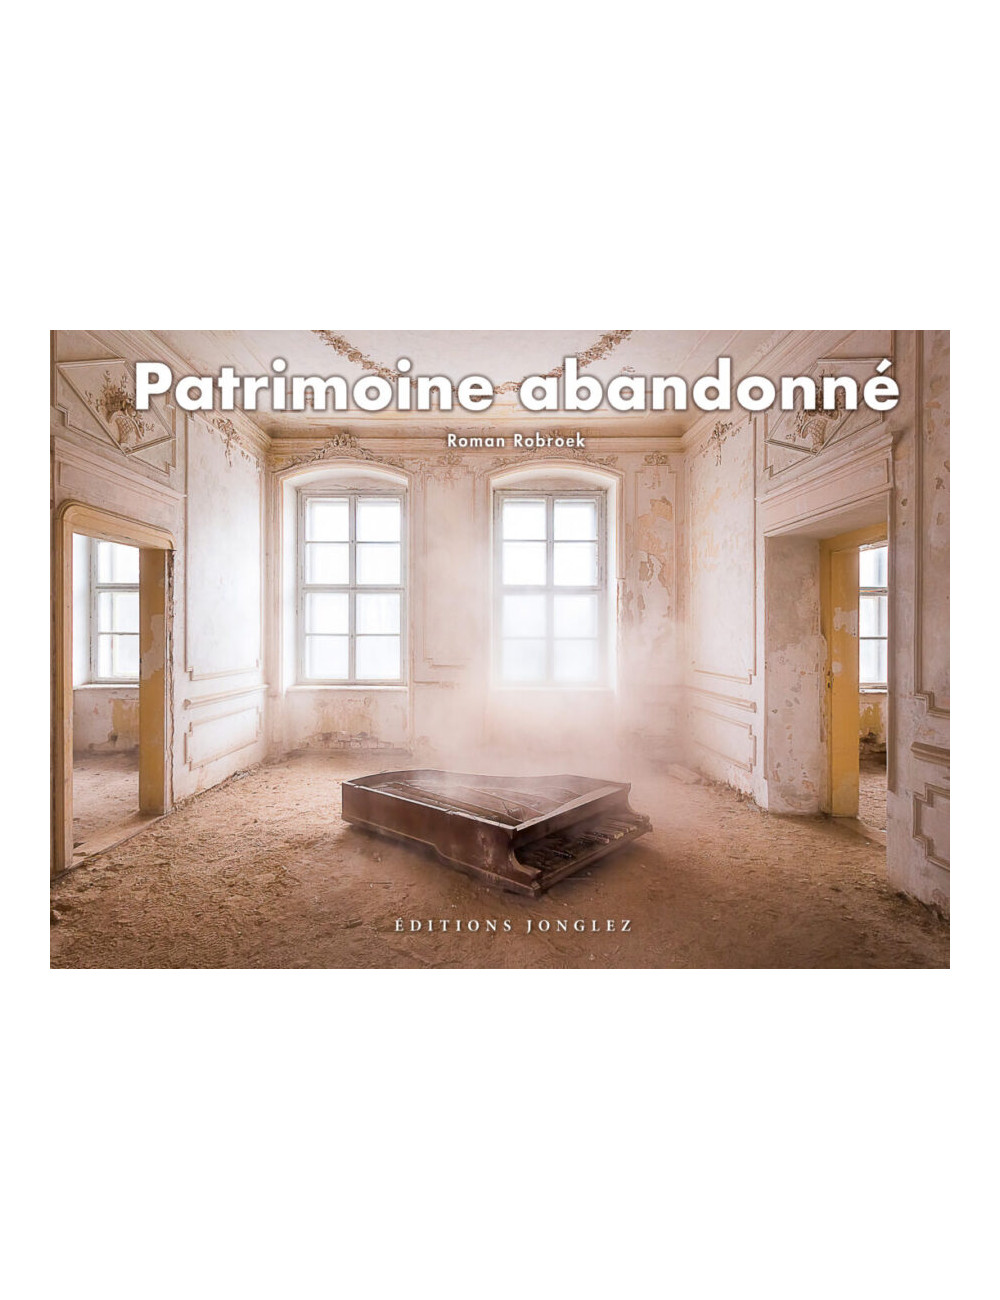 le beau-livre photo Patrimoine abandonné - Éditions Jonglez - Roman Robroek